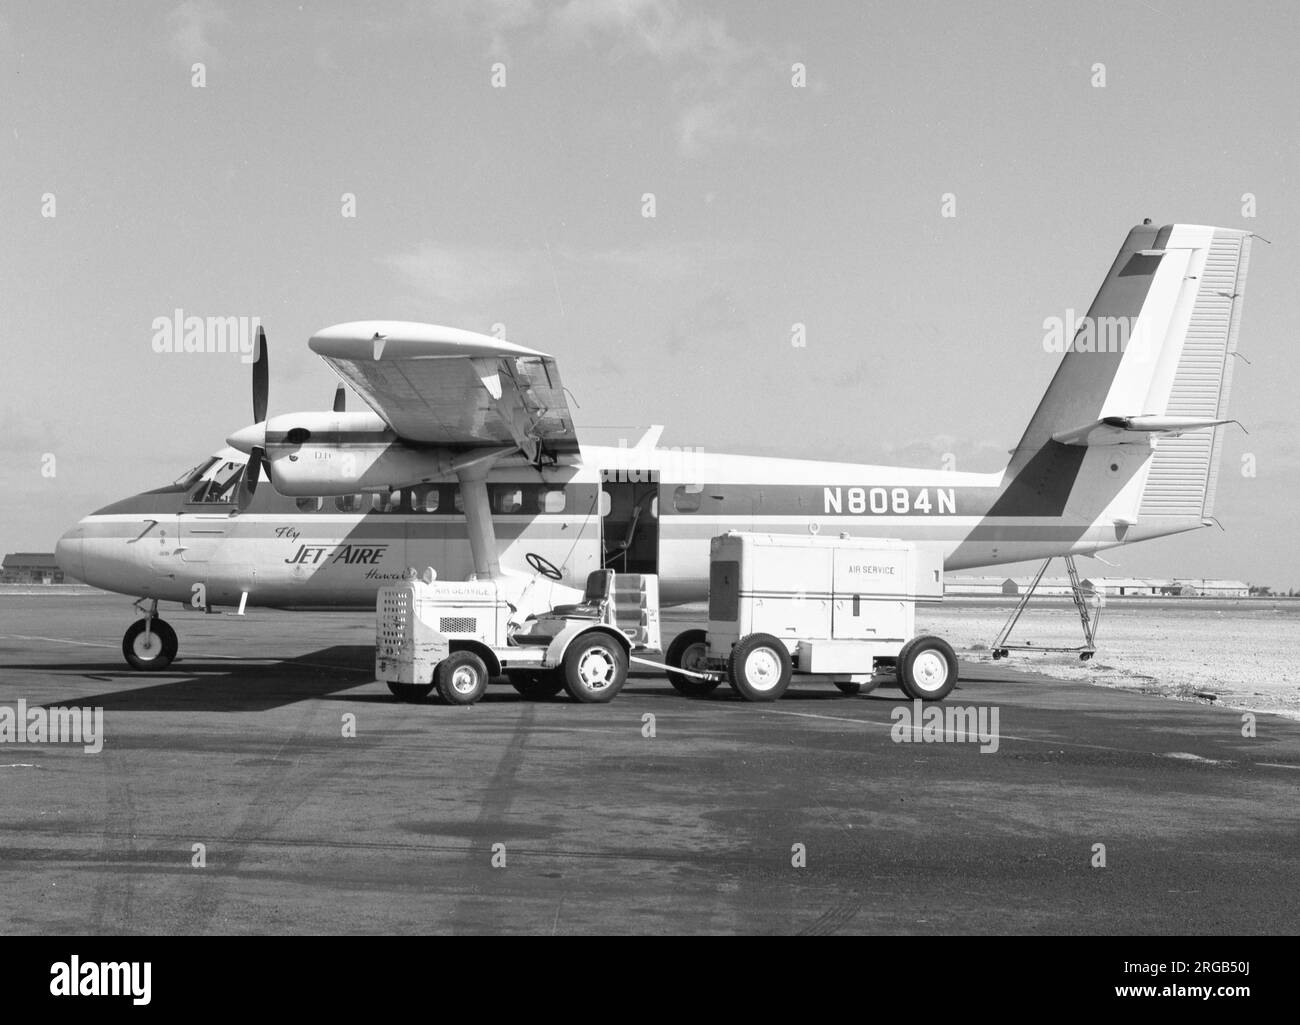 De Havilland Canada DHC-6-100 Twin Otter N8084N (msn 1578TB7), di Hawaii Jet-Aire. Foto Stock